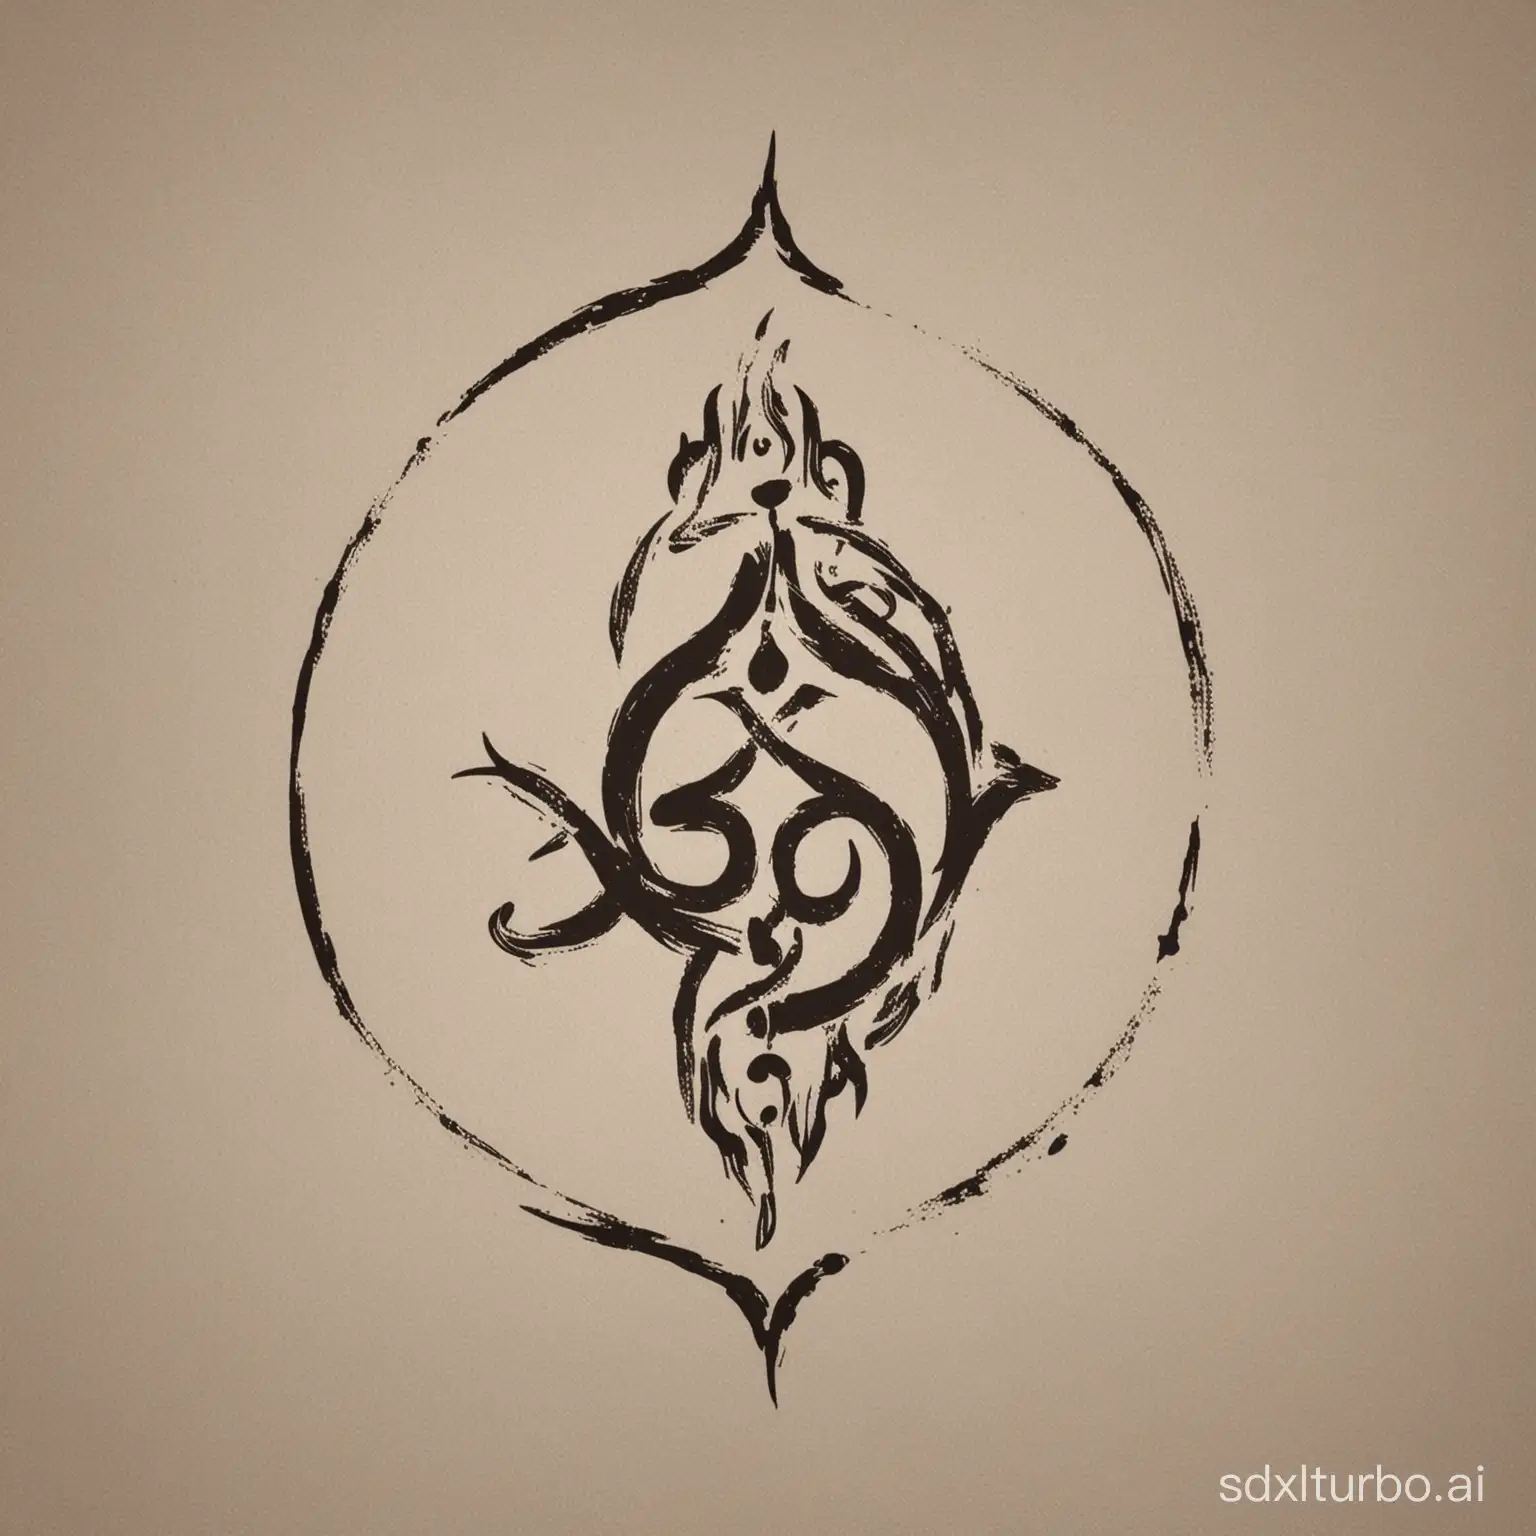 Minimalistic-Logo-of-Shiva-and-Shakti-Embodying-the-Principle-of-Duality